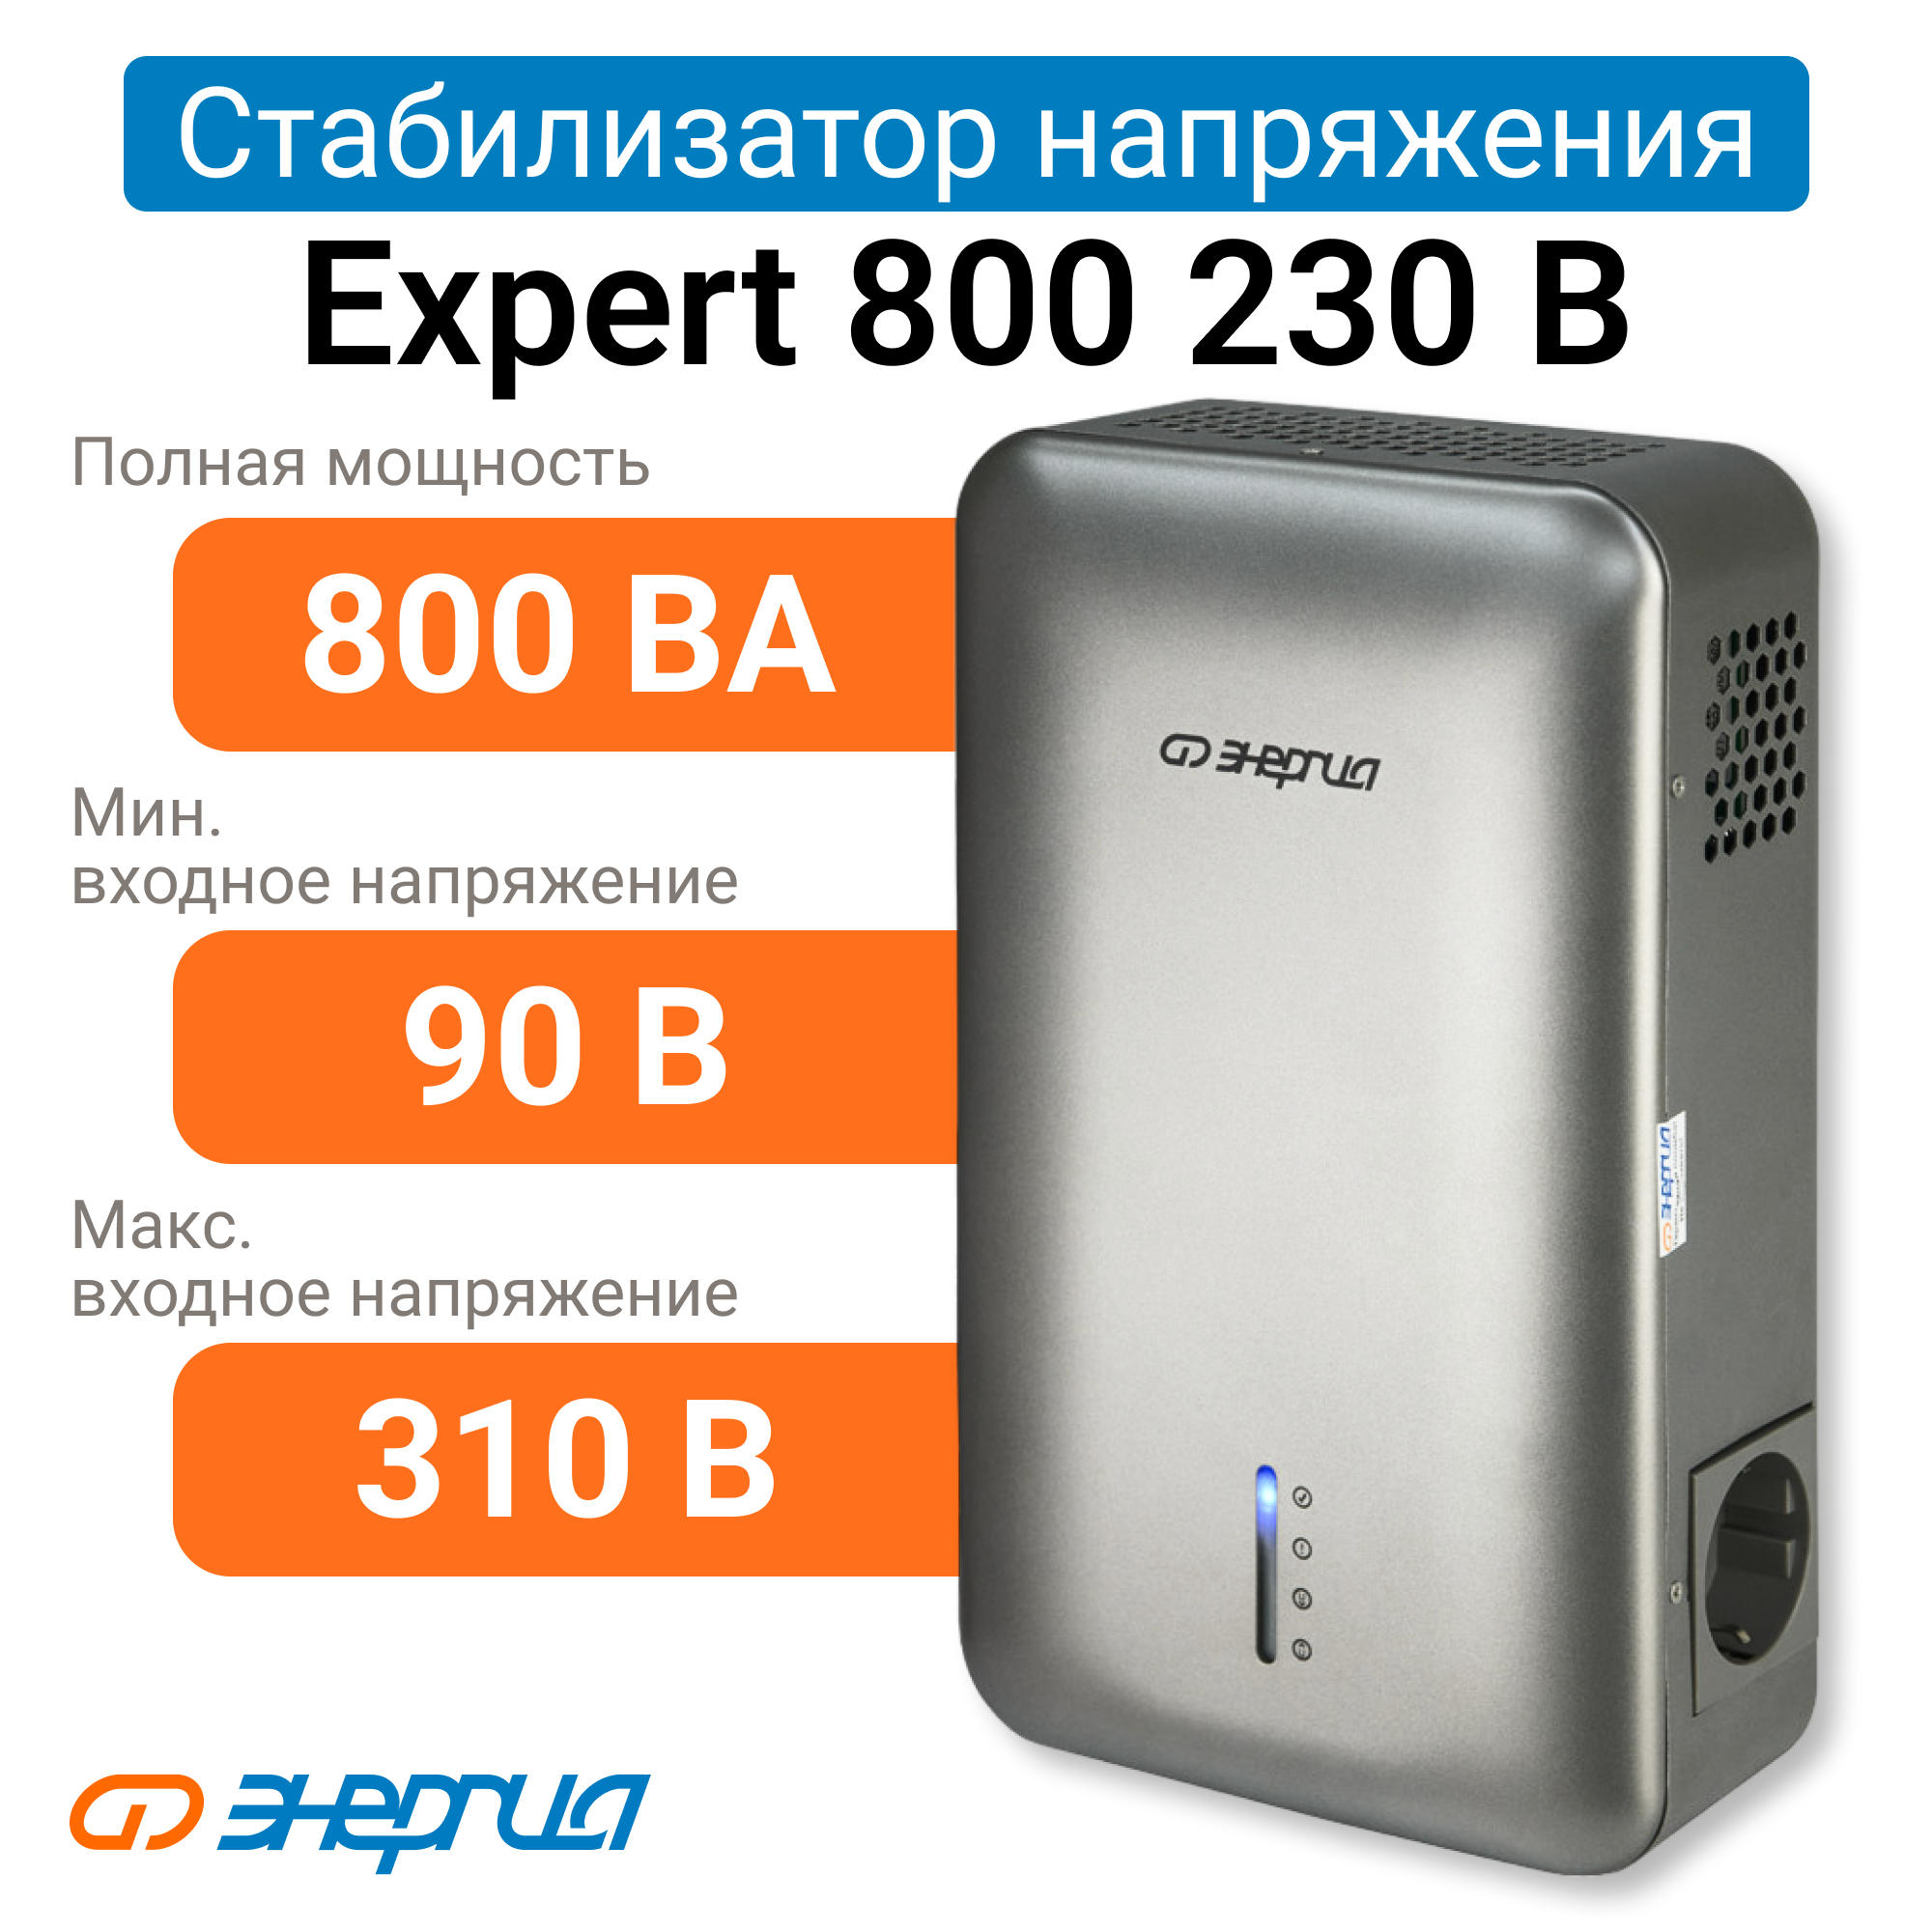 Стабилизатор напряжения Энергия Expert 800 230В (Е0101-0245) стабилизатор напряжения энергия hybrid ii 60000 е0101 0173